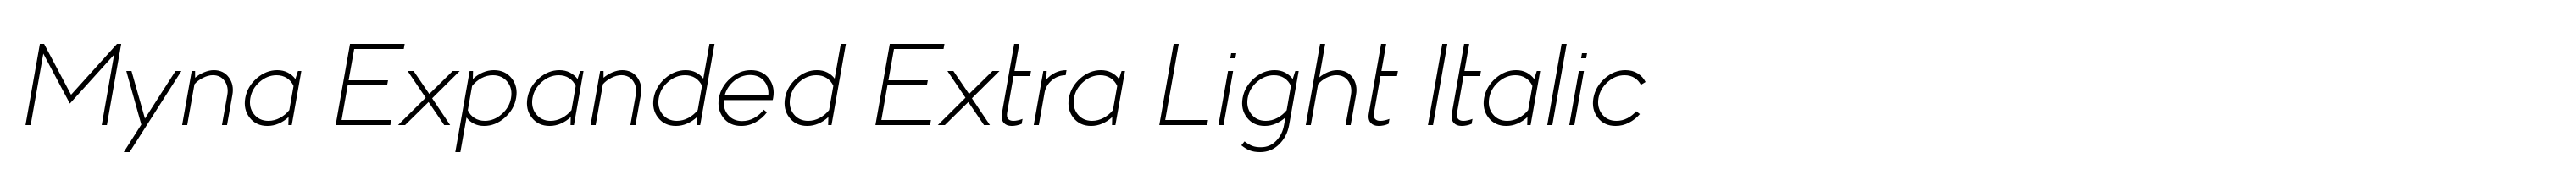 Myna Expanded Extra Light Italic